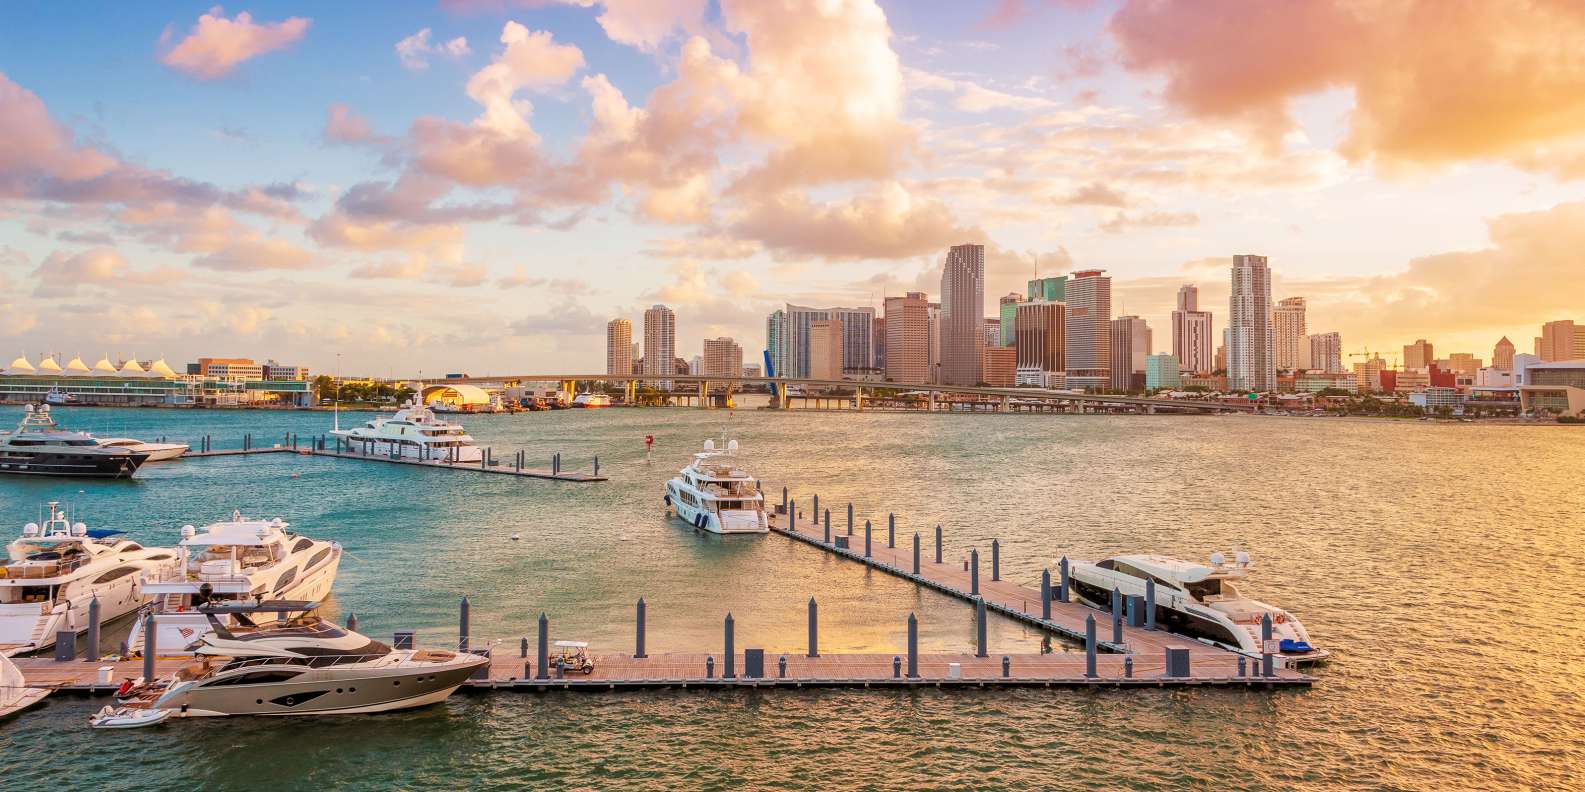 Bến du thuyền Miami tại Mỹ là điểm hội tụ của giới siêu giàu (Ảnh: Get Your Guide)